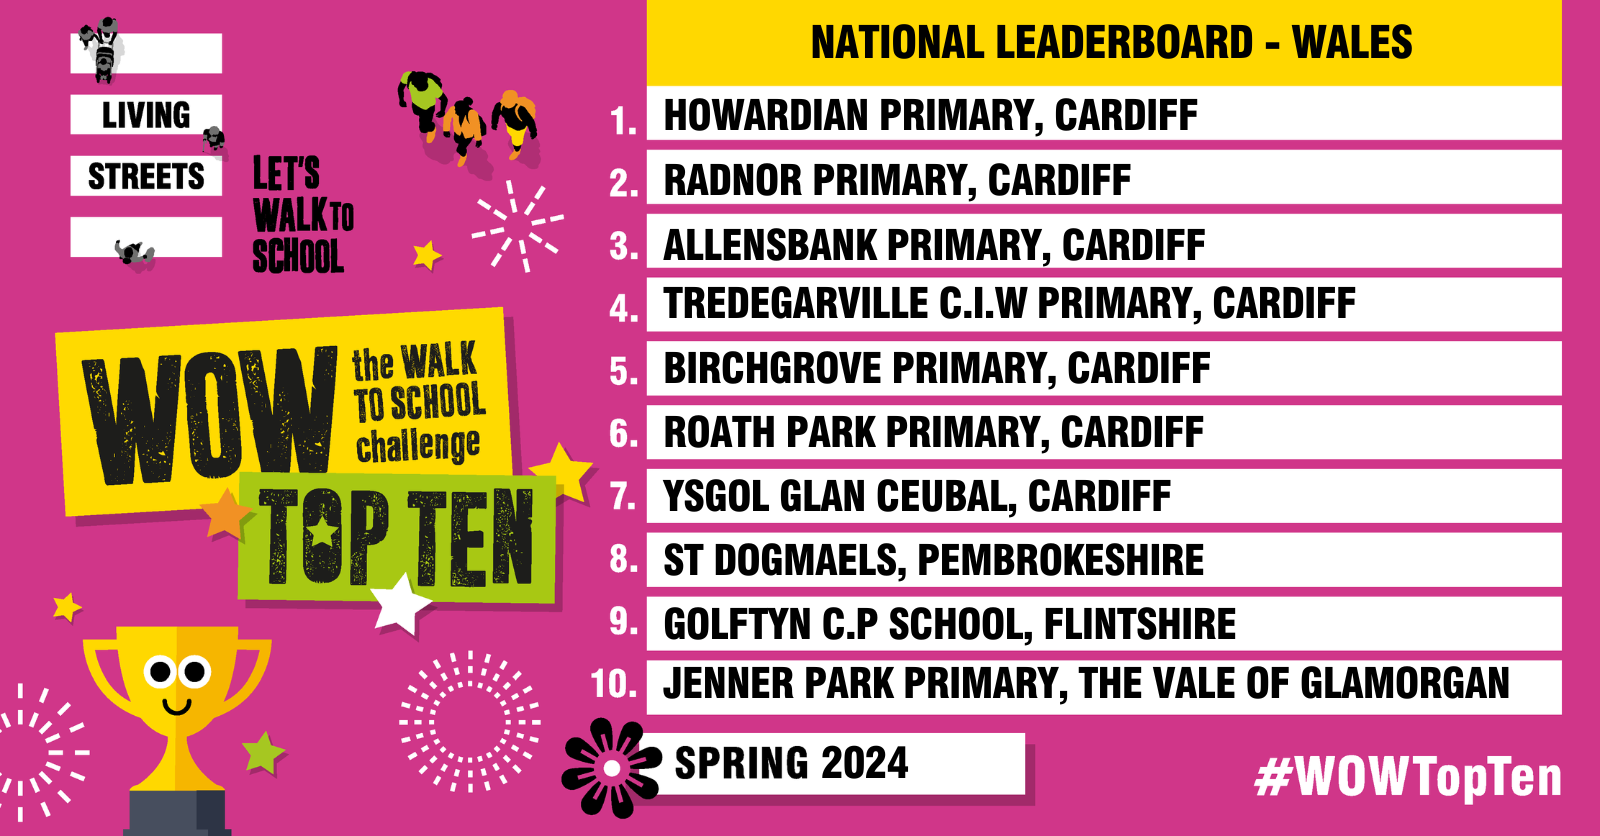 WOW Top Ten Leaderboard (Wales) - winner is Howardian Primary, Cardiff